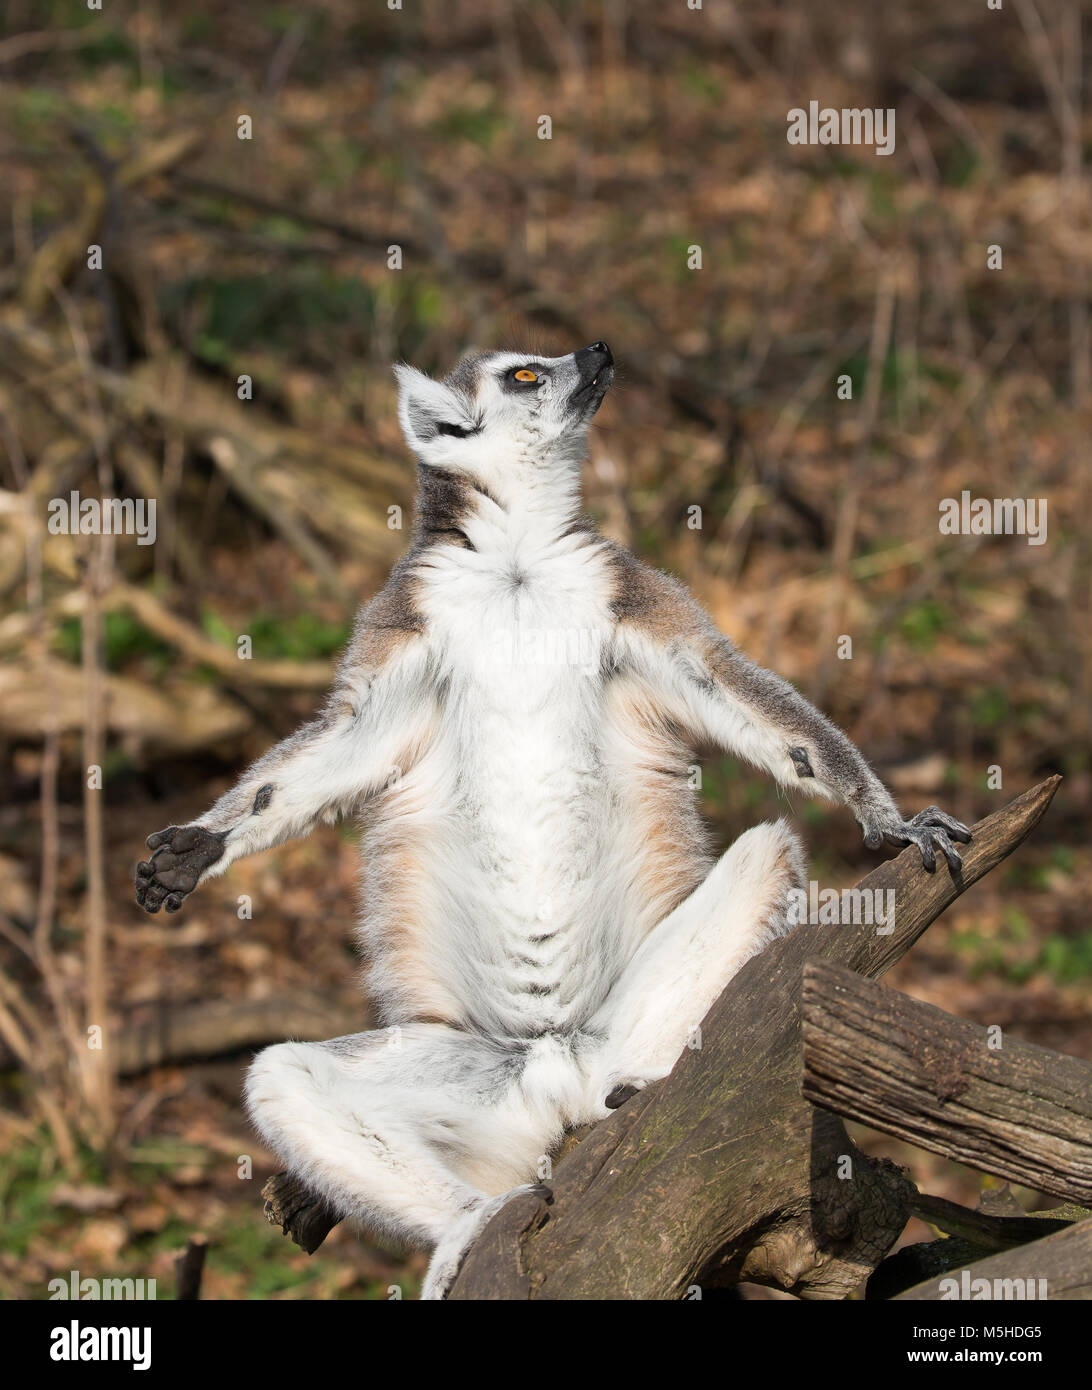 Primo piano lemur con coda ad anello (Lemo corta) isolato all'aperto seduto su rami, braccia e gambe tenuti fuori ai lati in posizione lotus. Divertente posa per prendere il sole. Foto Stock